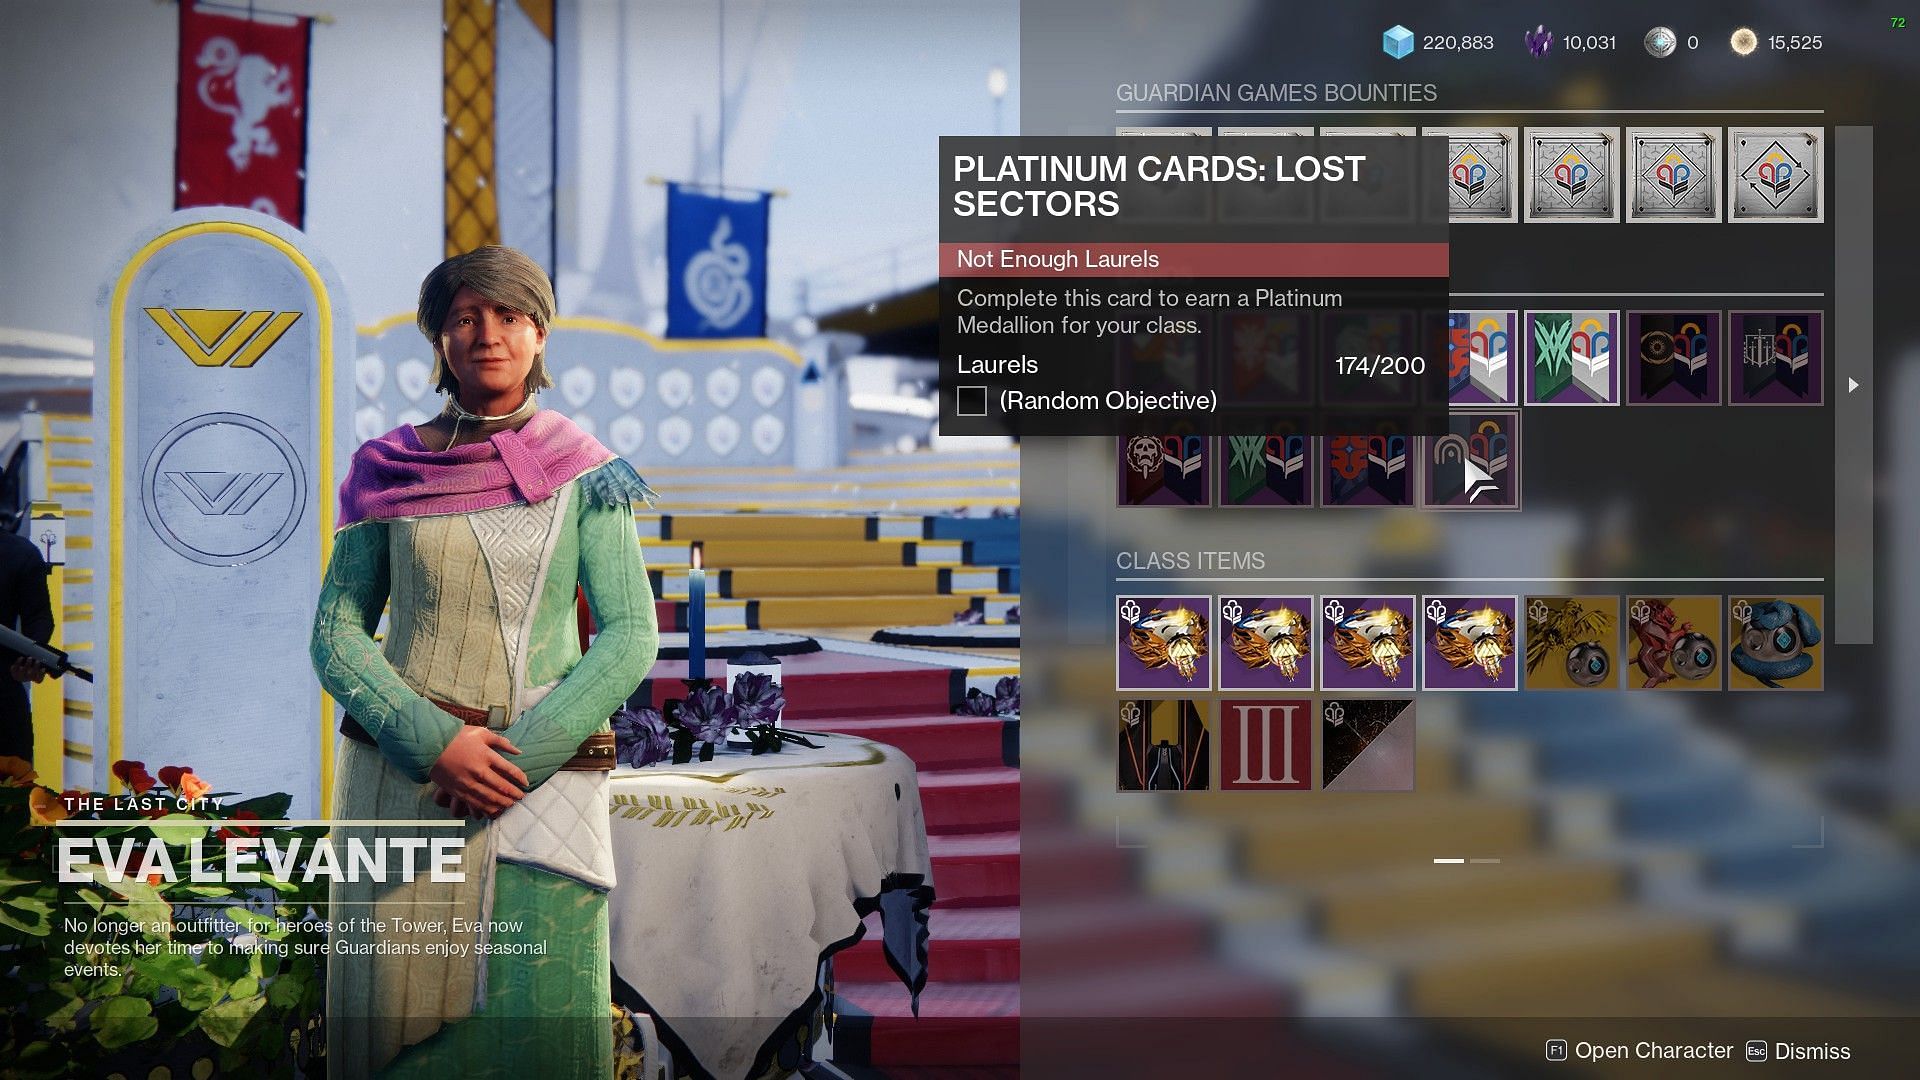 Eva Levante inventory for Guardian Games (Image via Destiny 2)